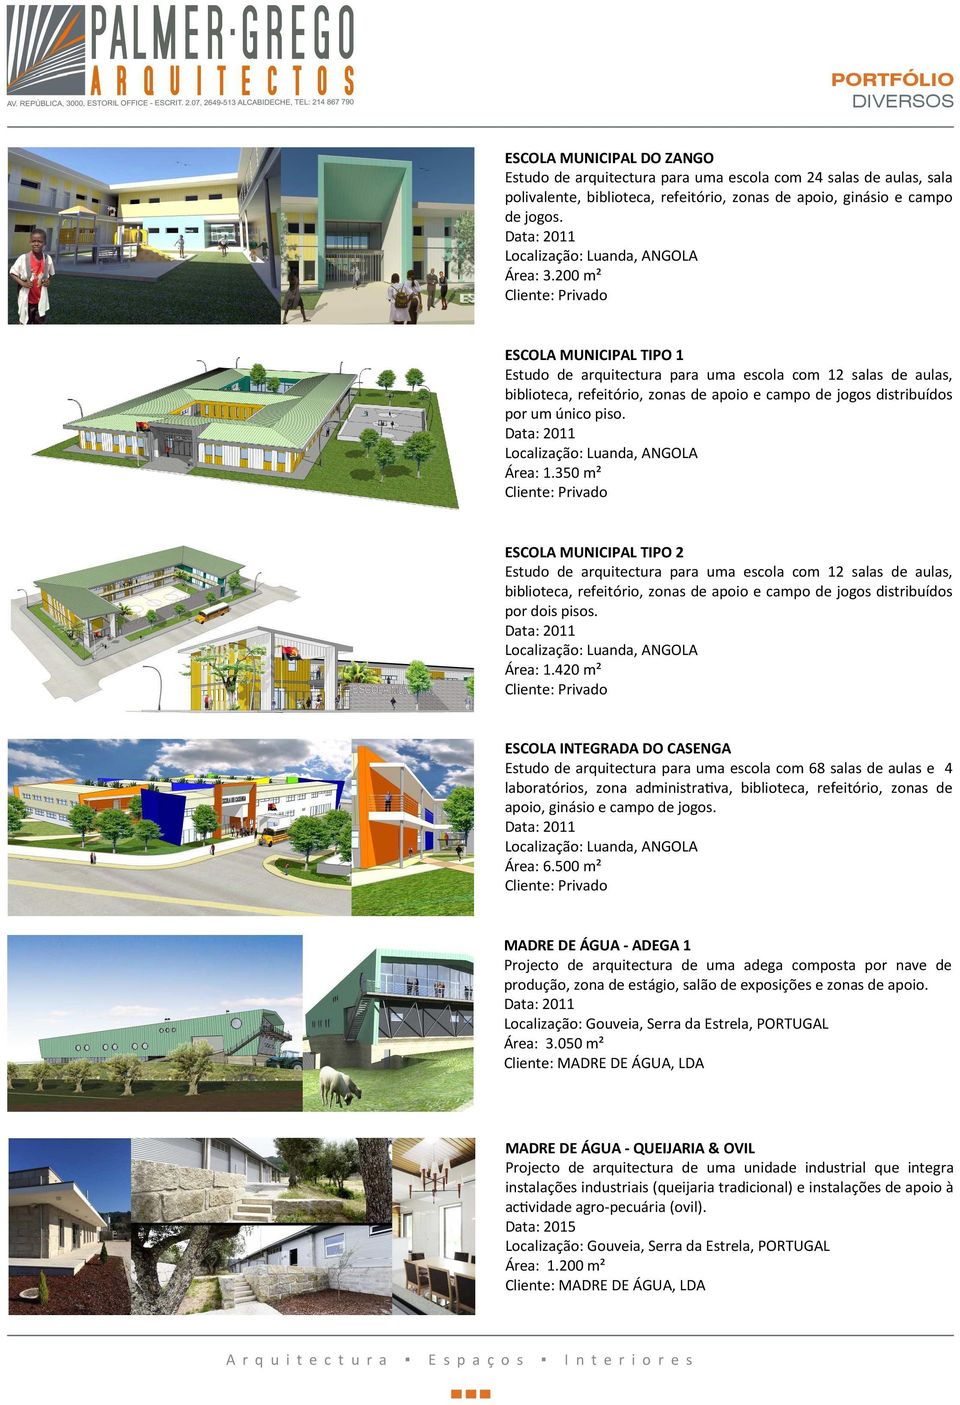 350 m² ESCOLA MUNICIPAL TIPO 2 Estudo de arquitectura para uma escola com 12 salas de aulas, biblioteca, refeitório, zonas de apoio e campo de jogos distribuídos por dois pisos. Área: 1.